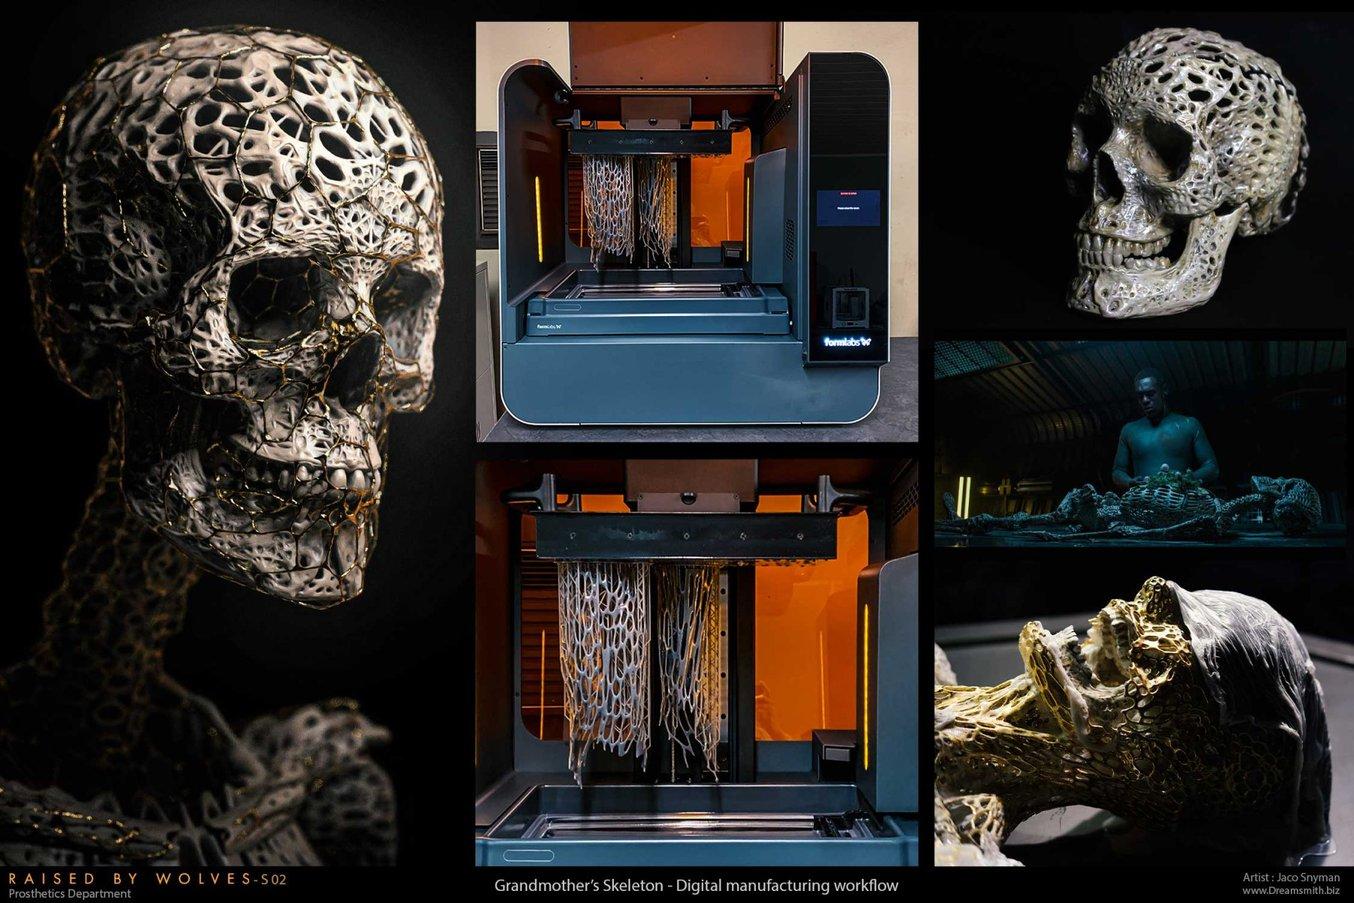 Stampa 3D, potenzialità e trend 2020 secondo i professionisti